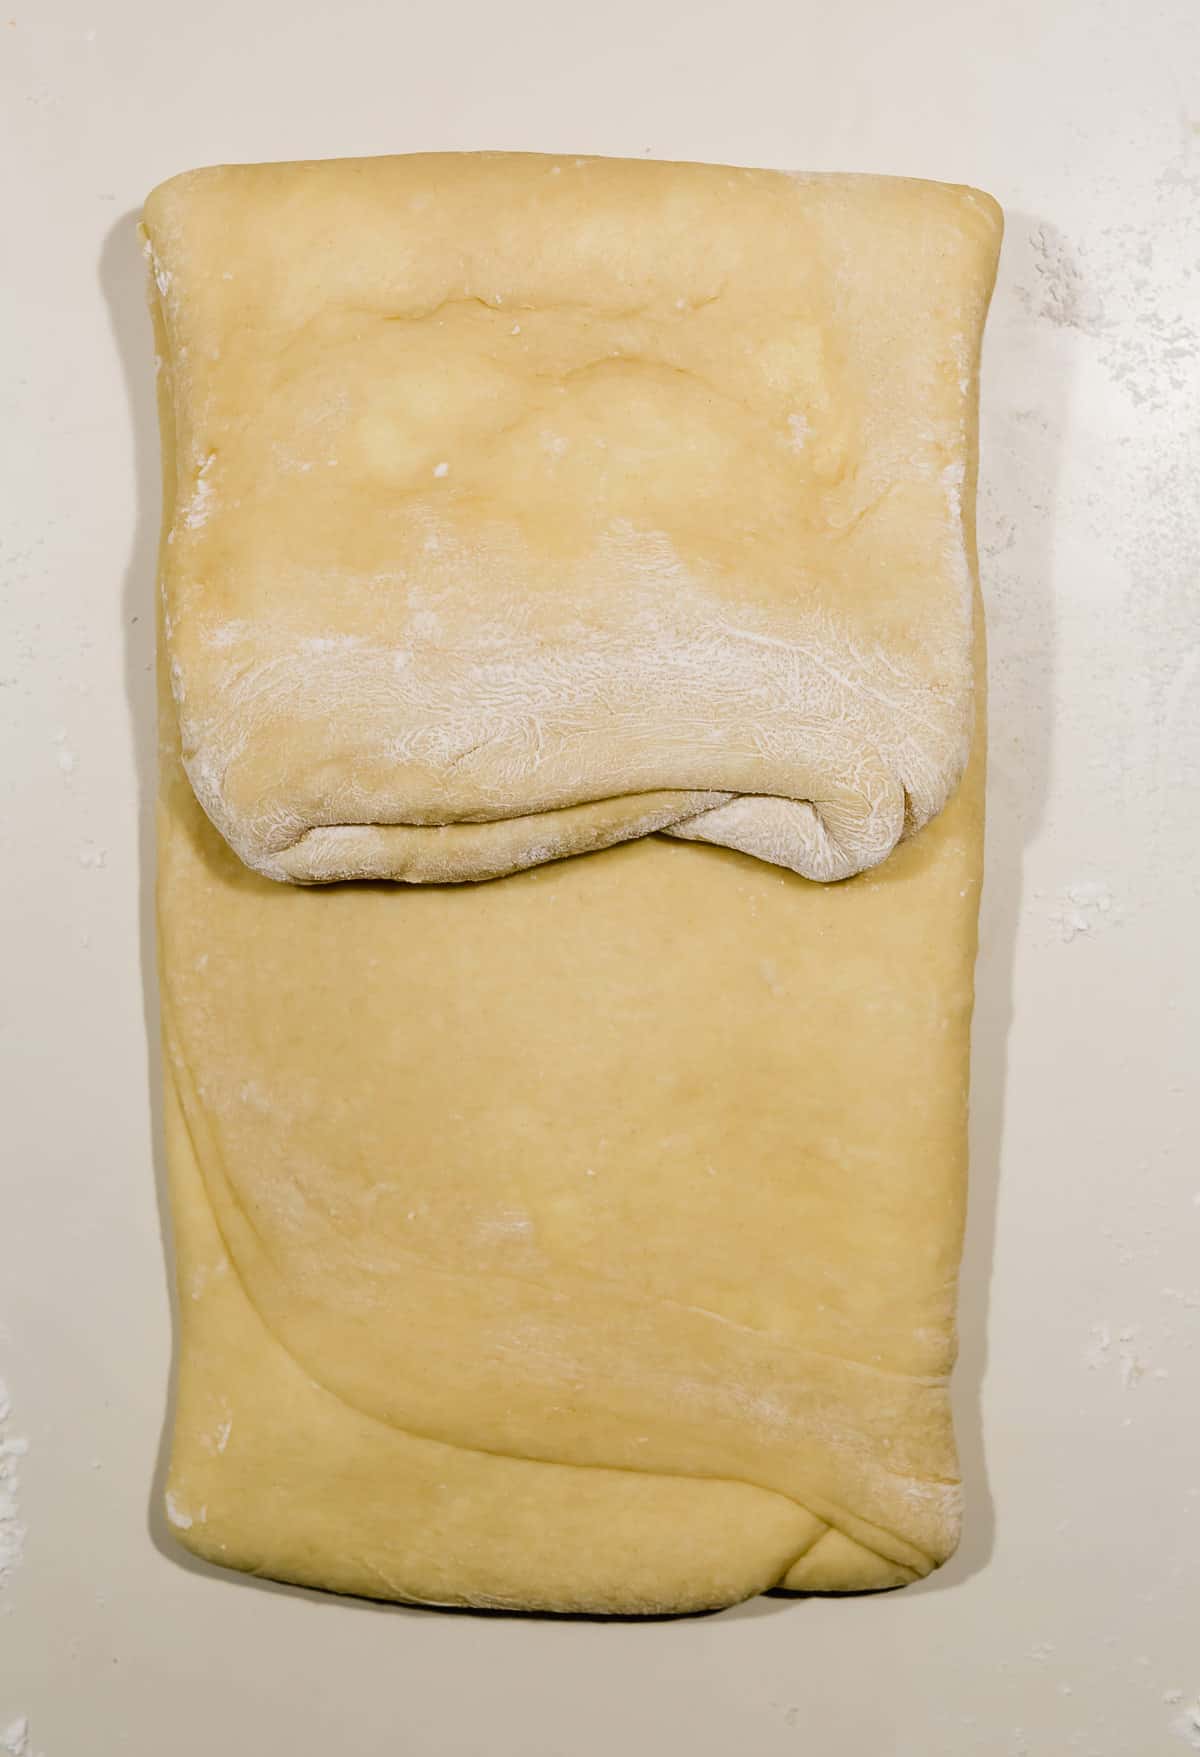 Laminating brioche bread, the top half of the brioche dough folded over onto itself. 